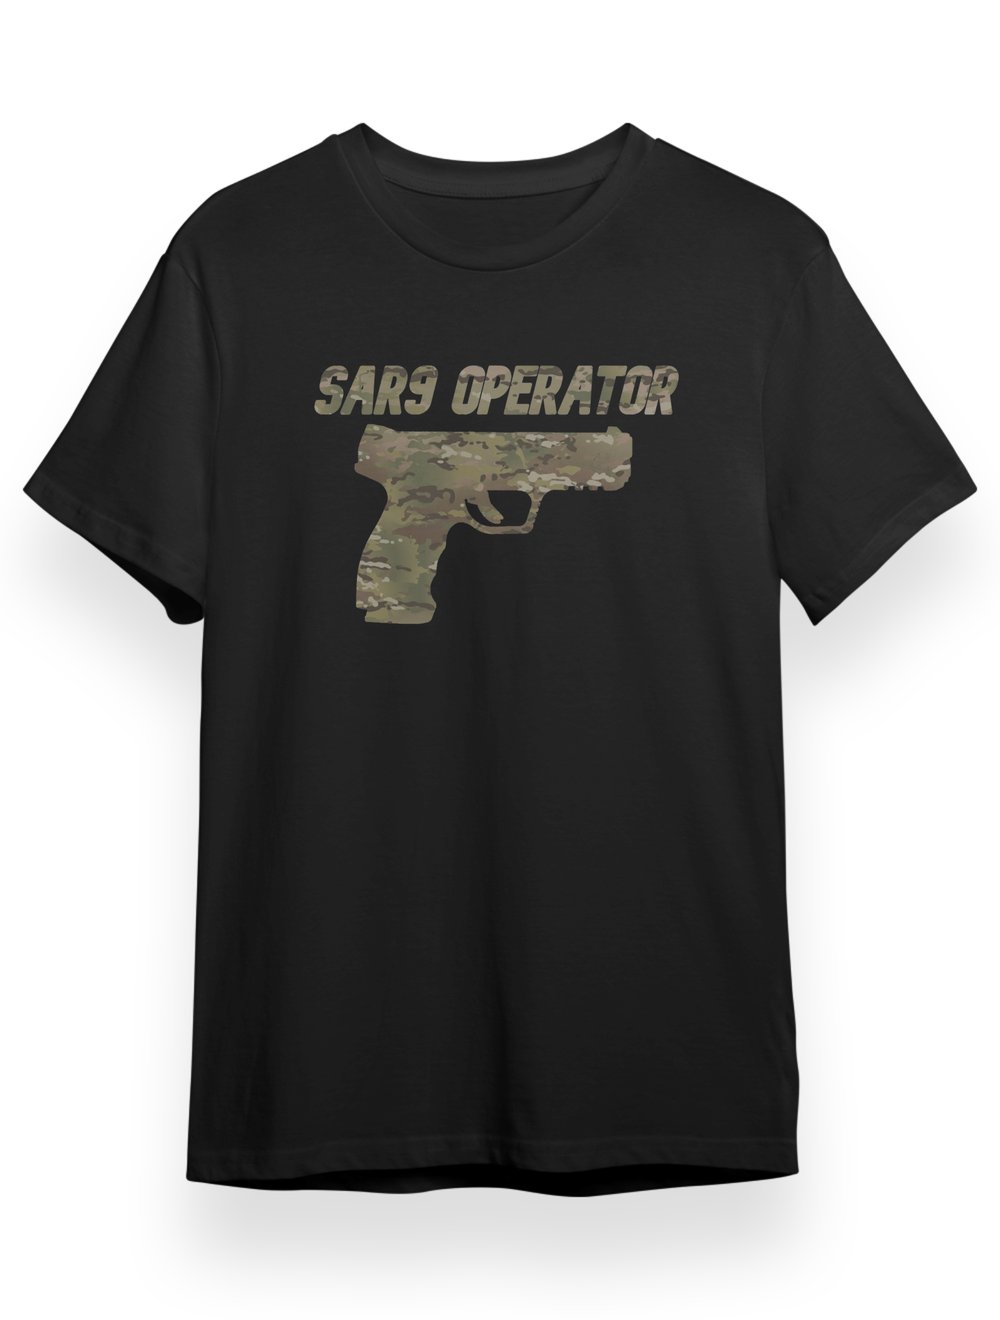 SAR9 OPERATOR